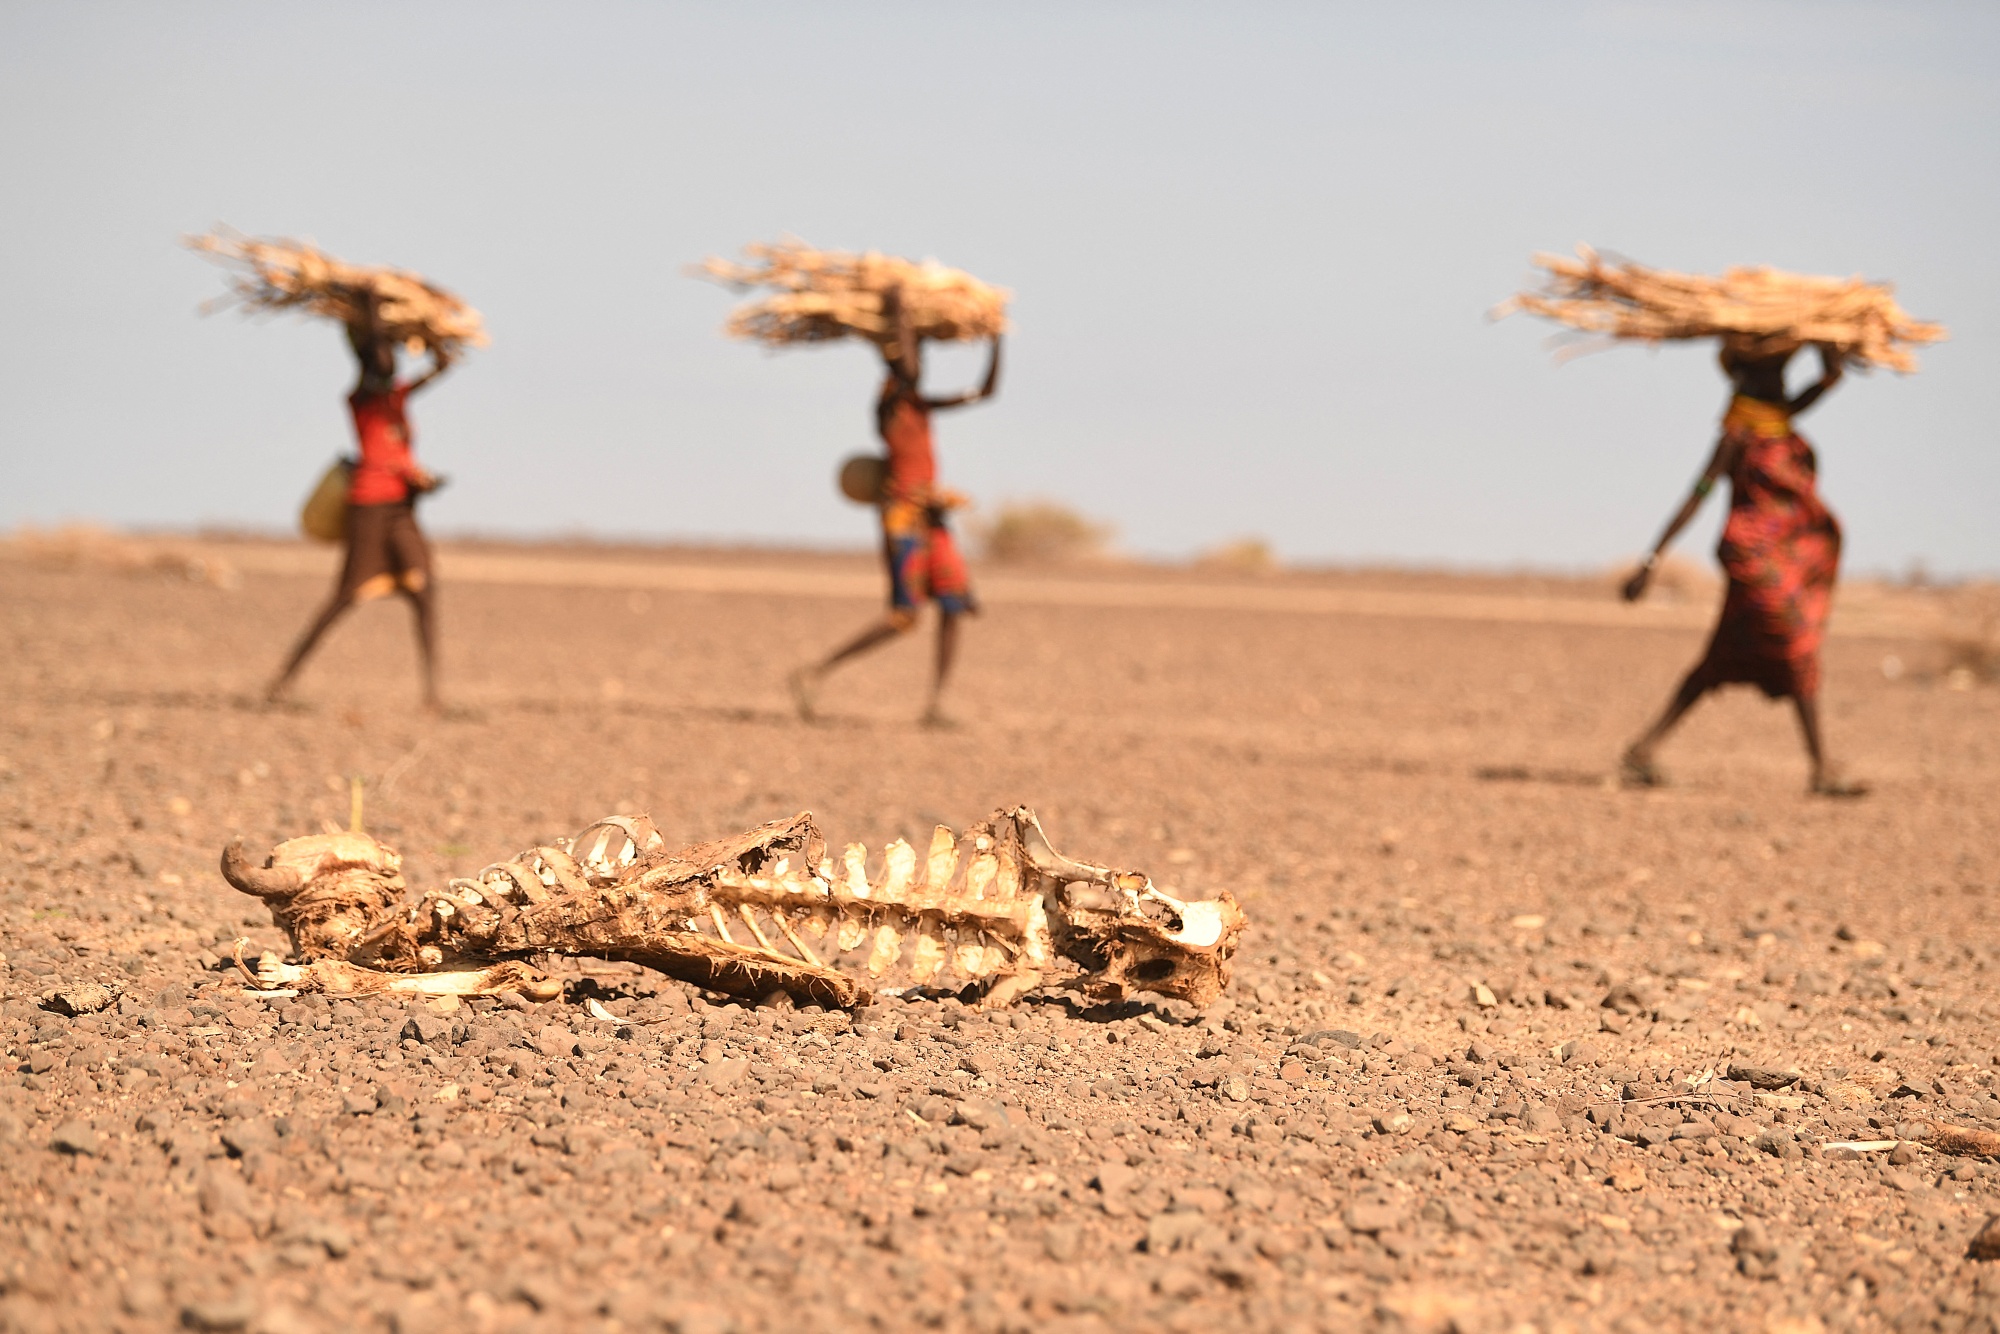 A carcass of a cow lies on the ground as&nbsp;Turkana women carrying firewood walk by&nbsp;in Marsabit, Kenya.&nbsp;